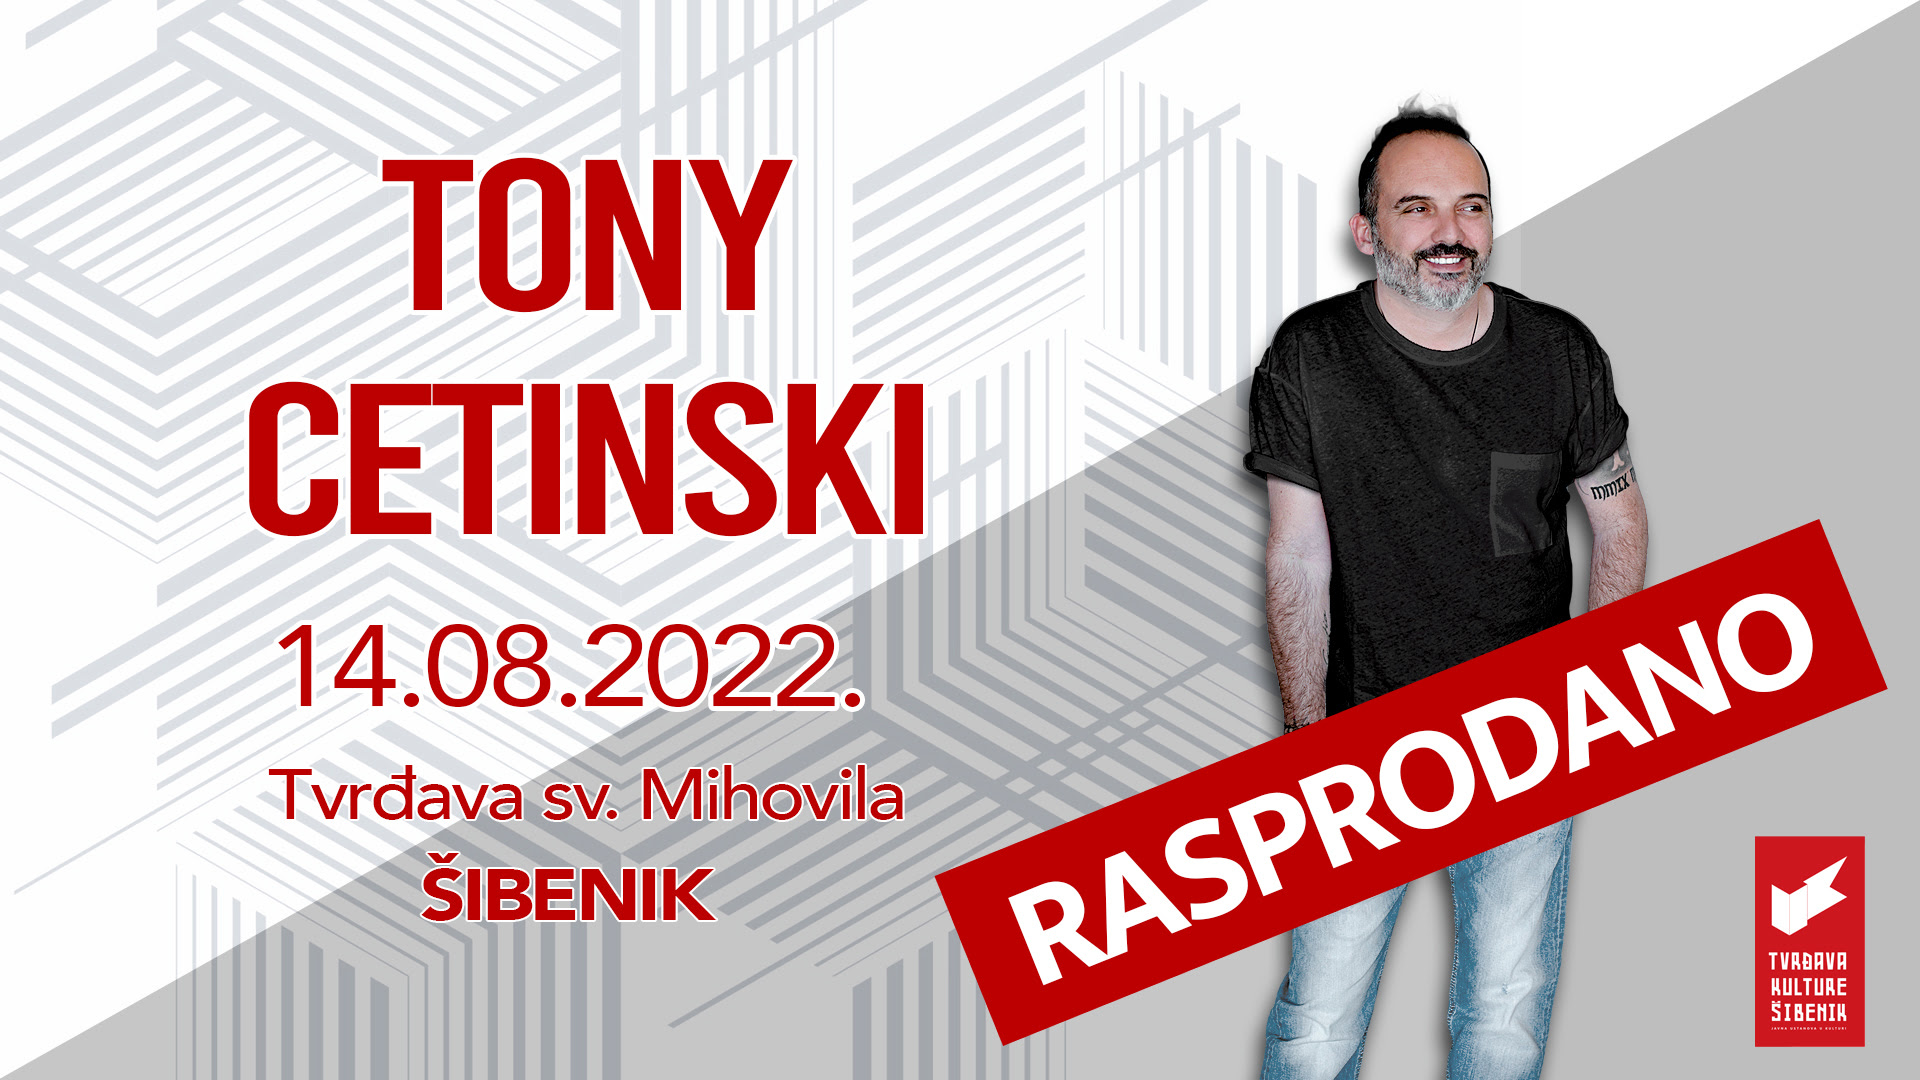 Rasprodan koncert – Tony Cetinski, tvrđava sv. Mihovila 14.08.!